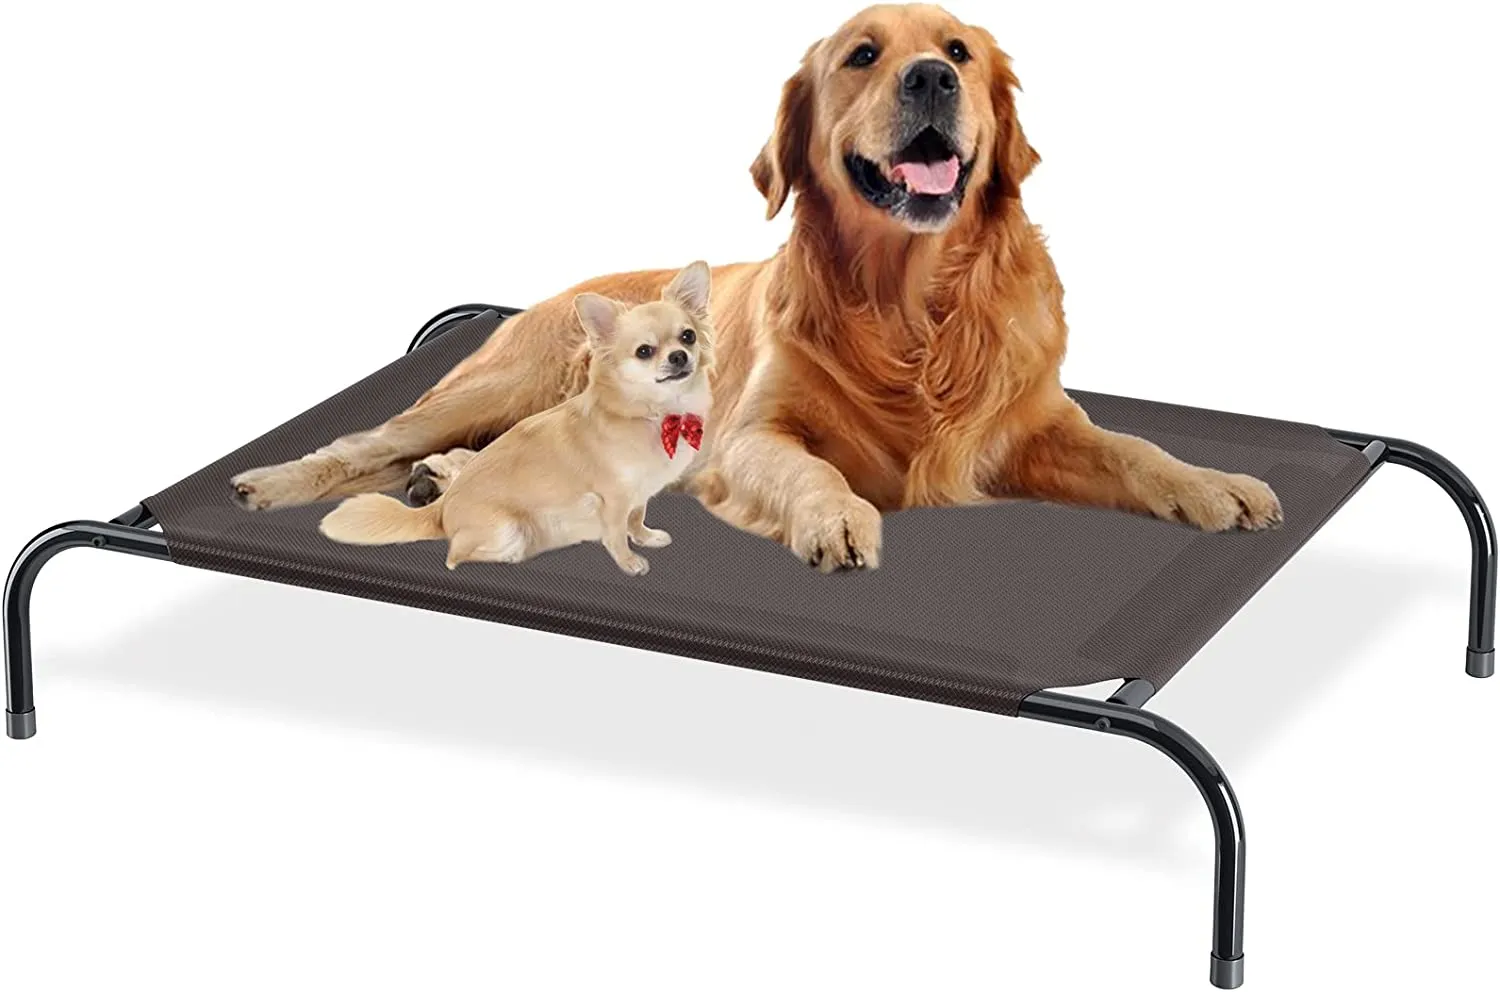 تبريد سرير مرتفع الكلب محمولة سرير أليف مرفوع مع شبكة قابلة للتنفس لا يوجد أقدام مطاطية قابلة للانزلاق للاستخدام في الهواء الطلق الداخلي